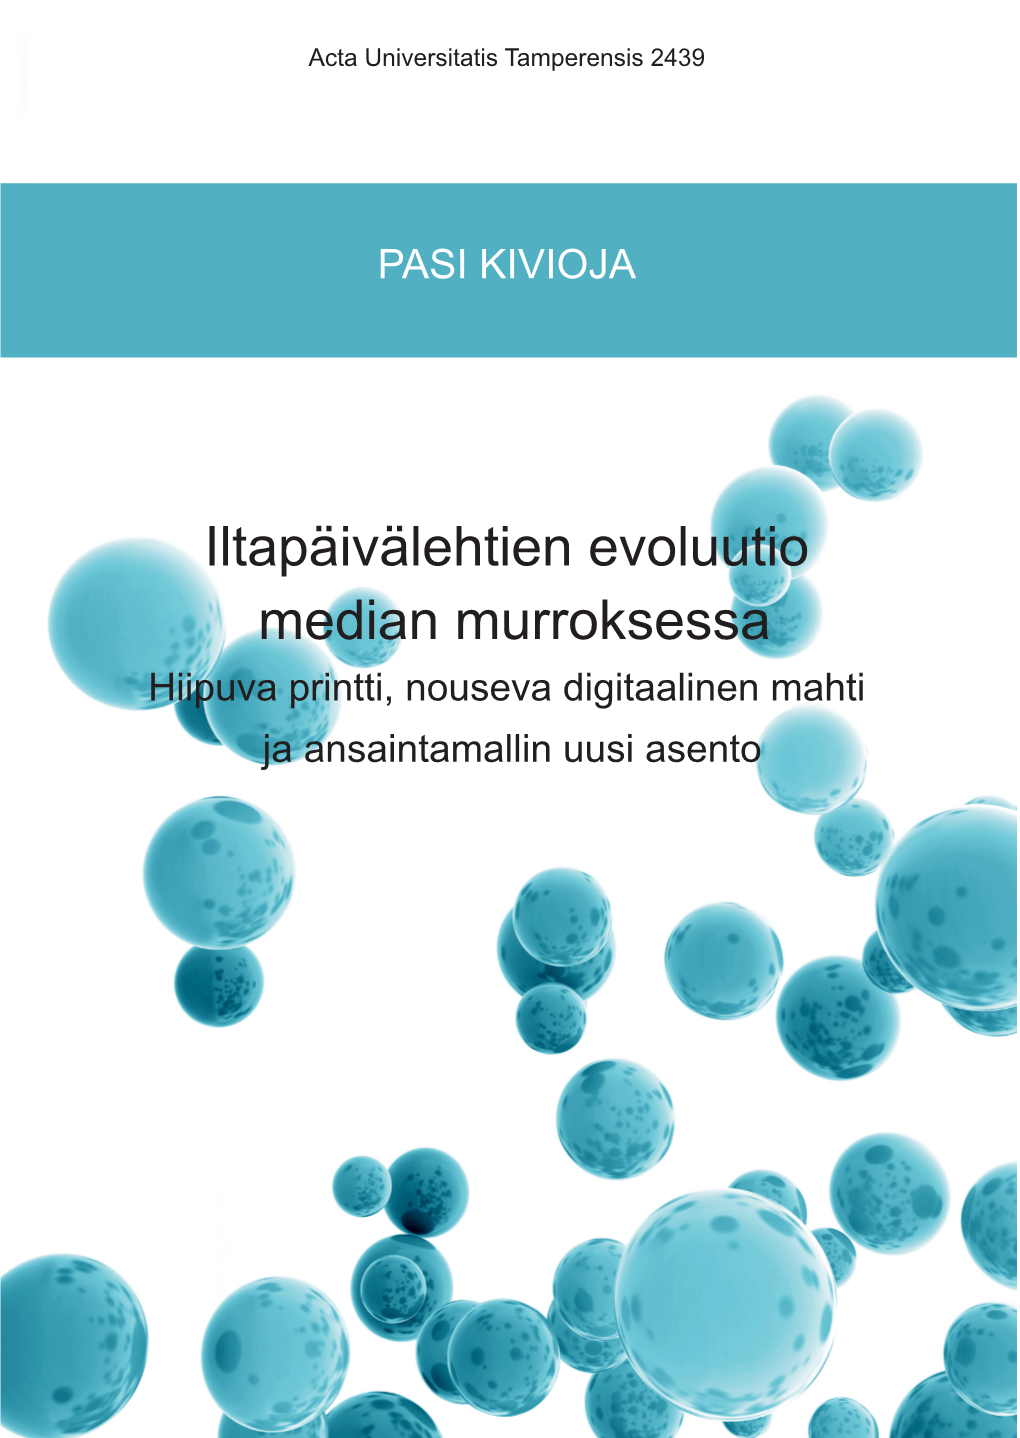 Iltapäivälehtien Evoluutio Median Murroksessa Acta Universitatis Tamperensis 2439